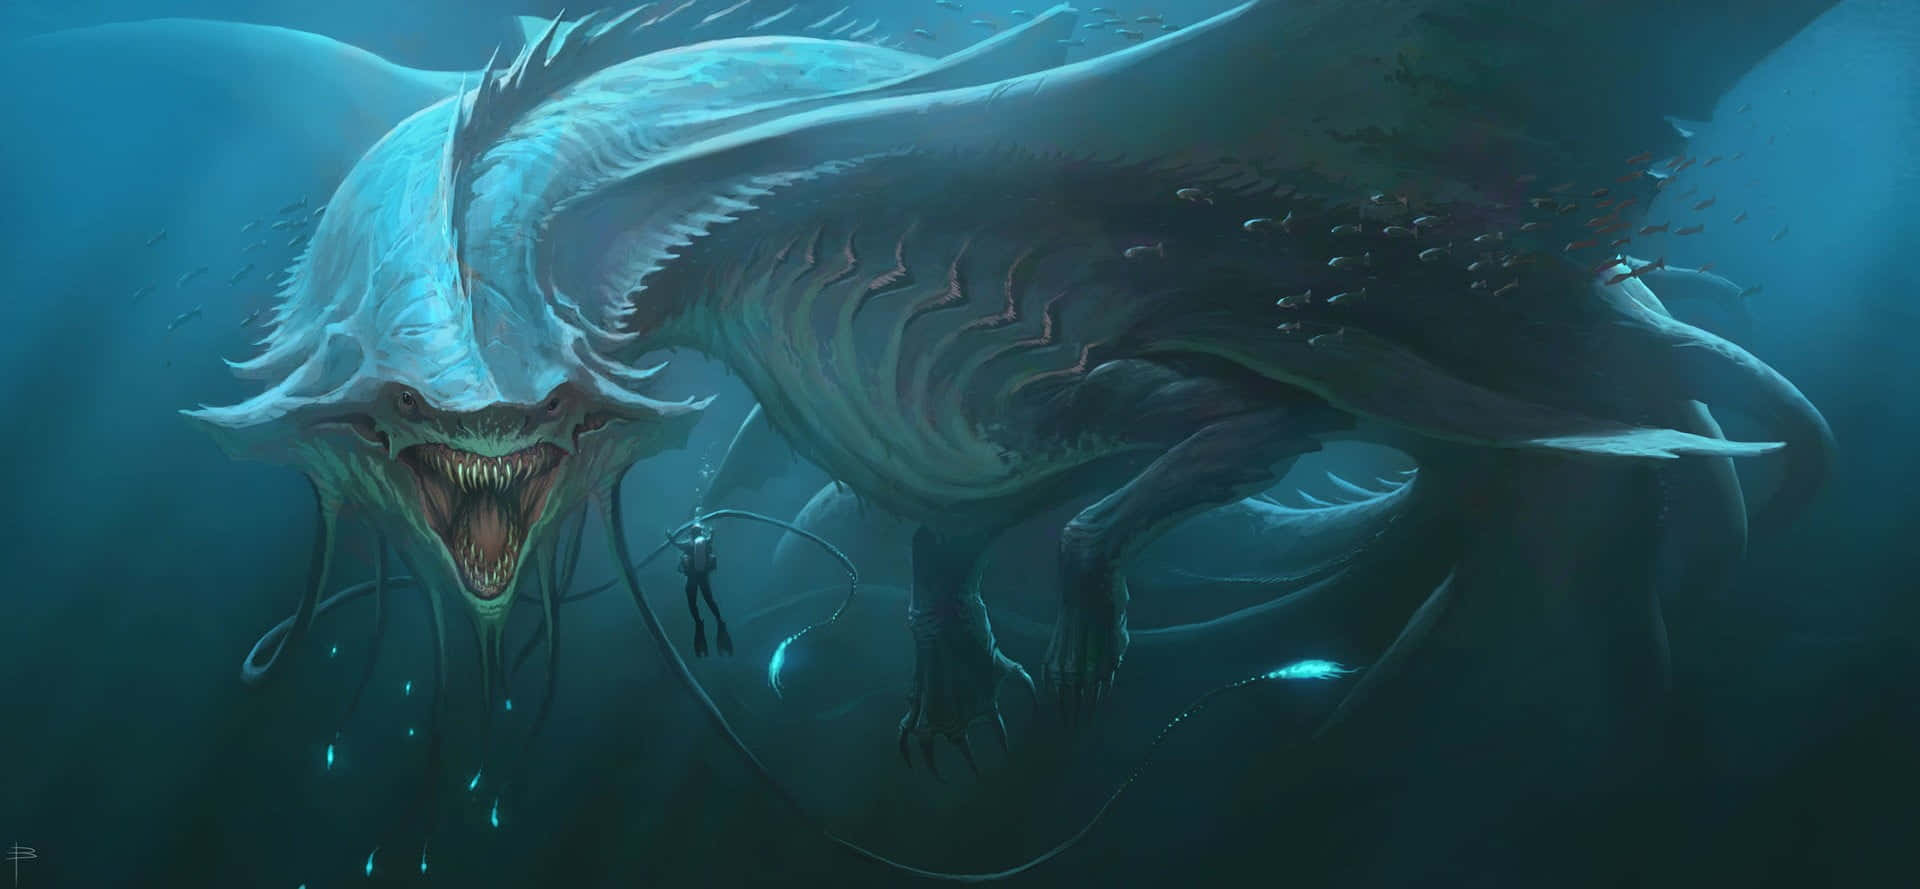 Majestic Sea Dragon Artwork Wallpaper